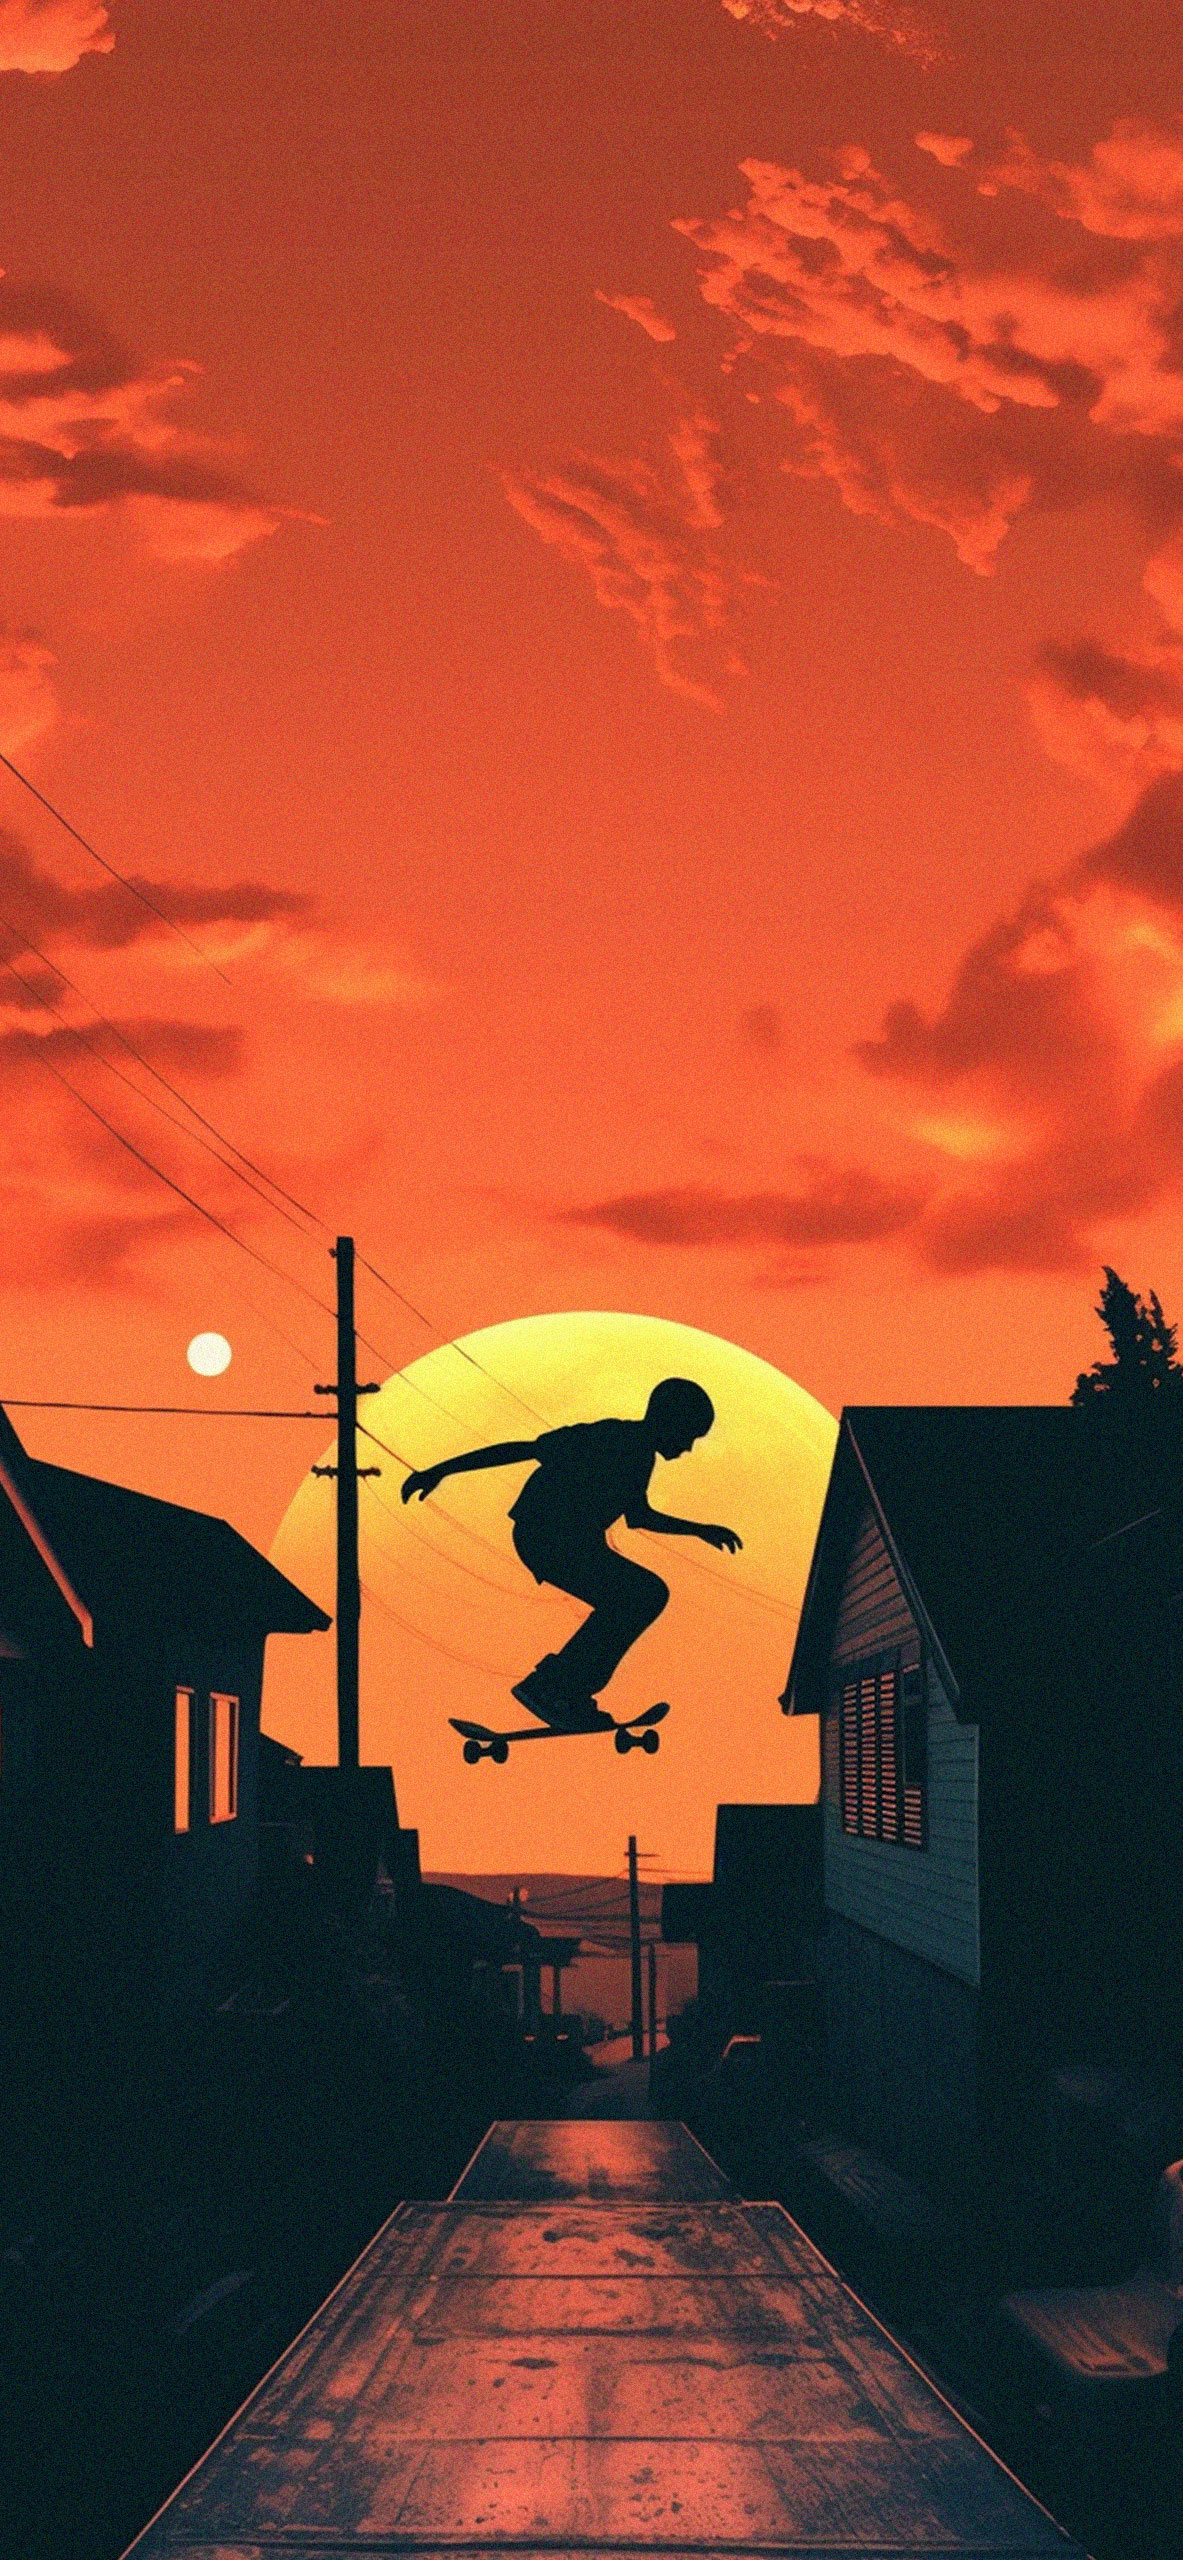 Skateboarder Jumping at Sunset Wallpaper Skateboarder Wallpape